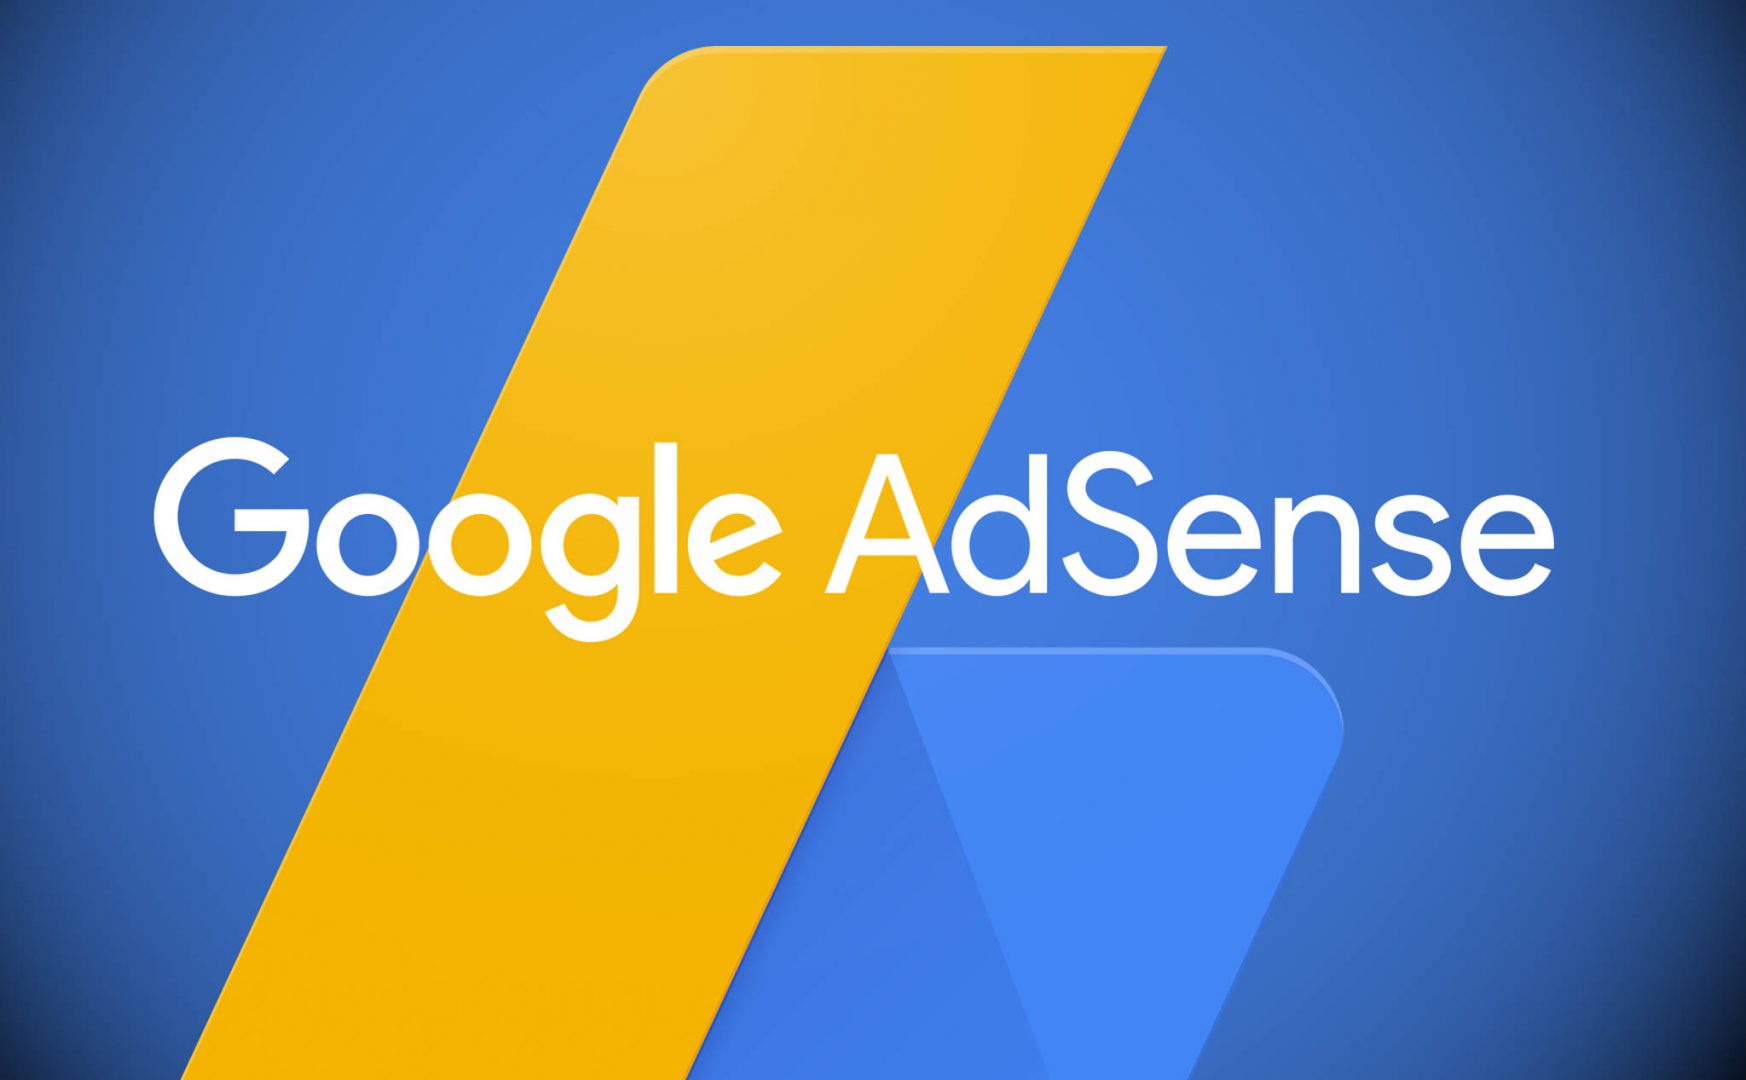 Google Adsense - Kiếm tiền online từ Google Adsense như thế nào?